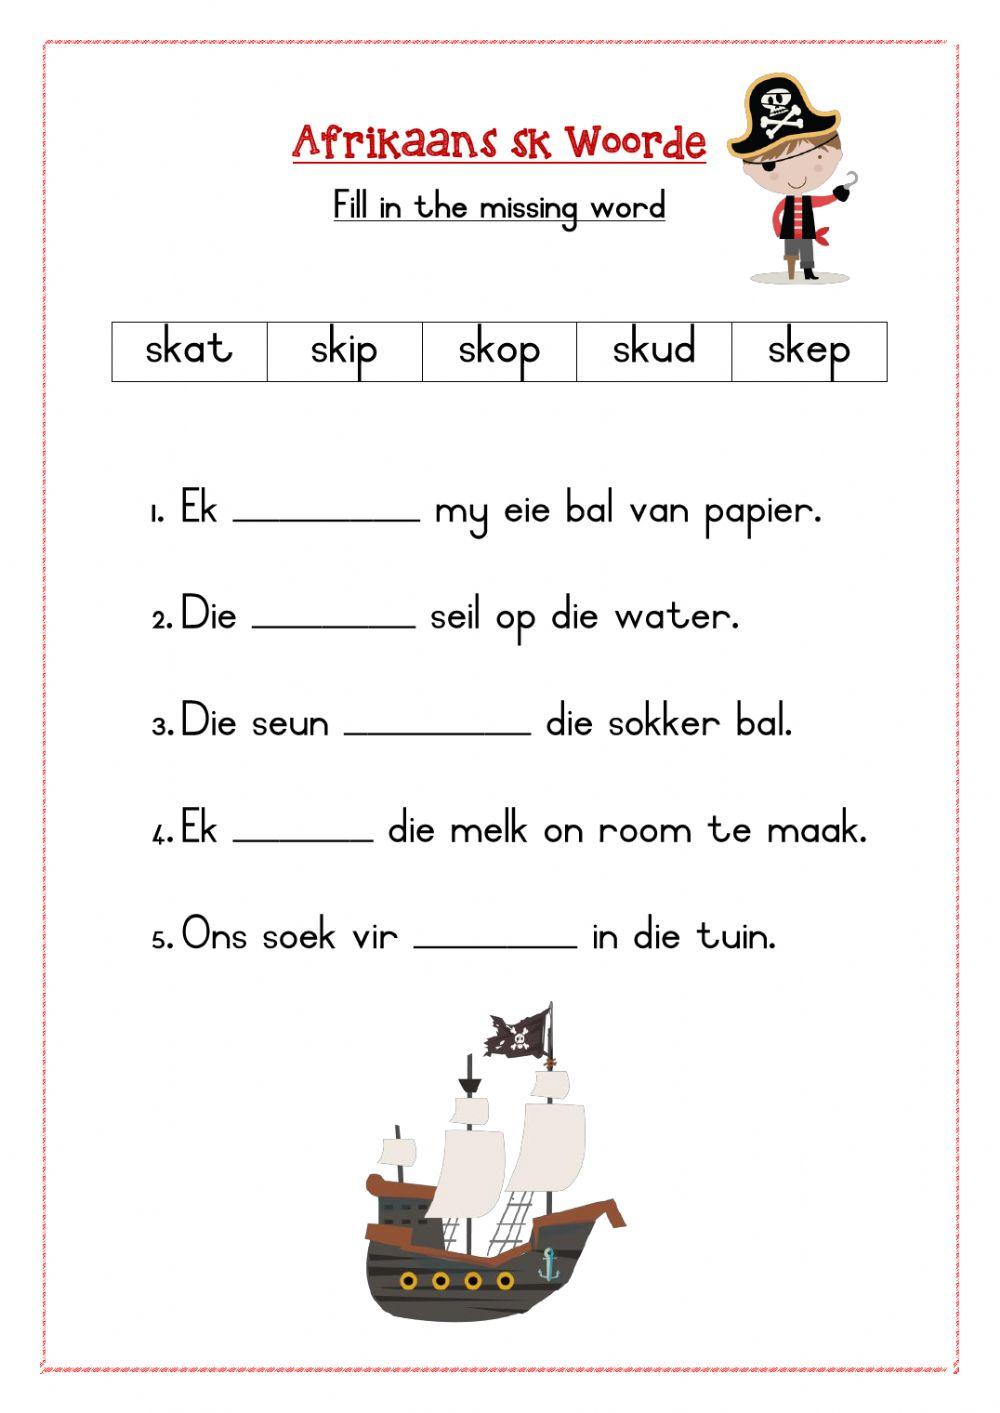 Afrikaans sk spelling words worksheet 3